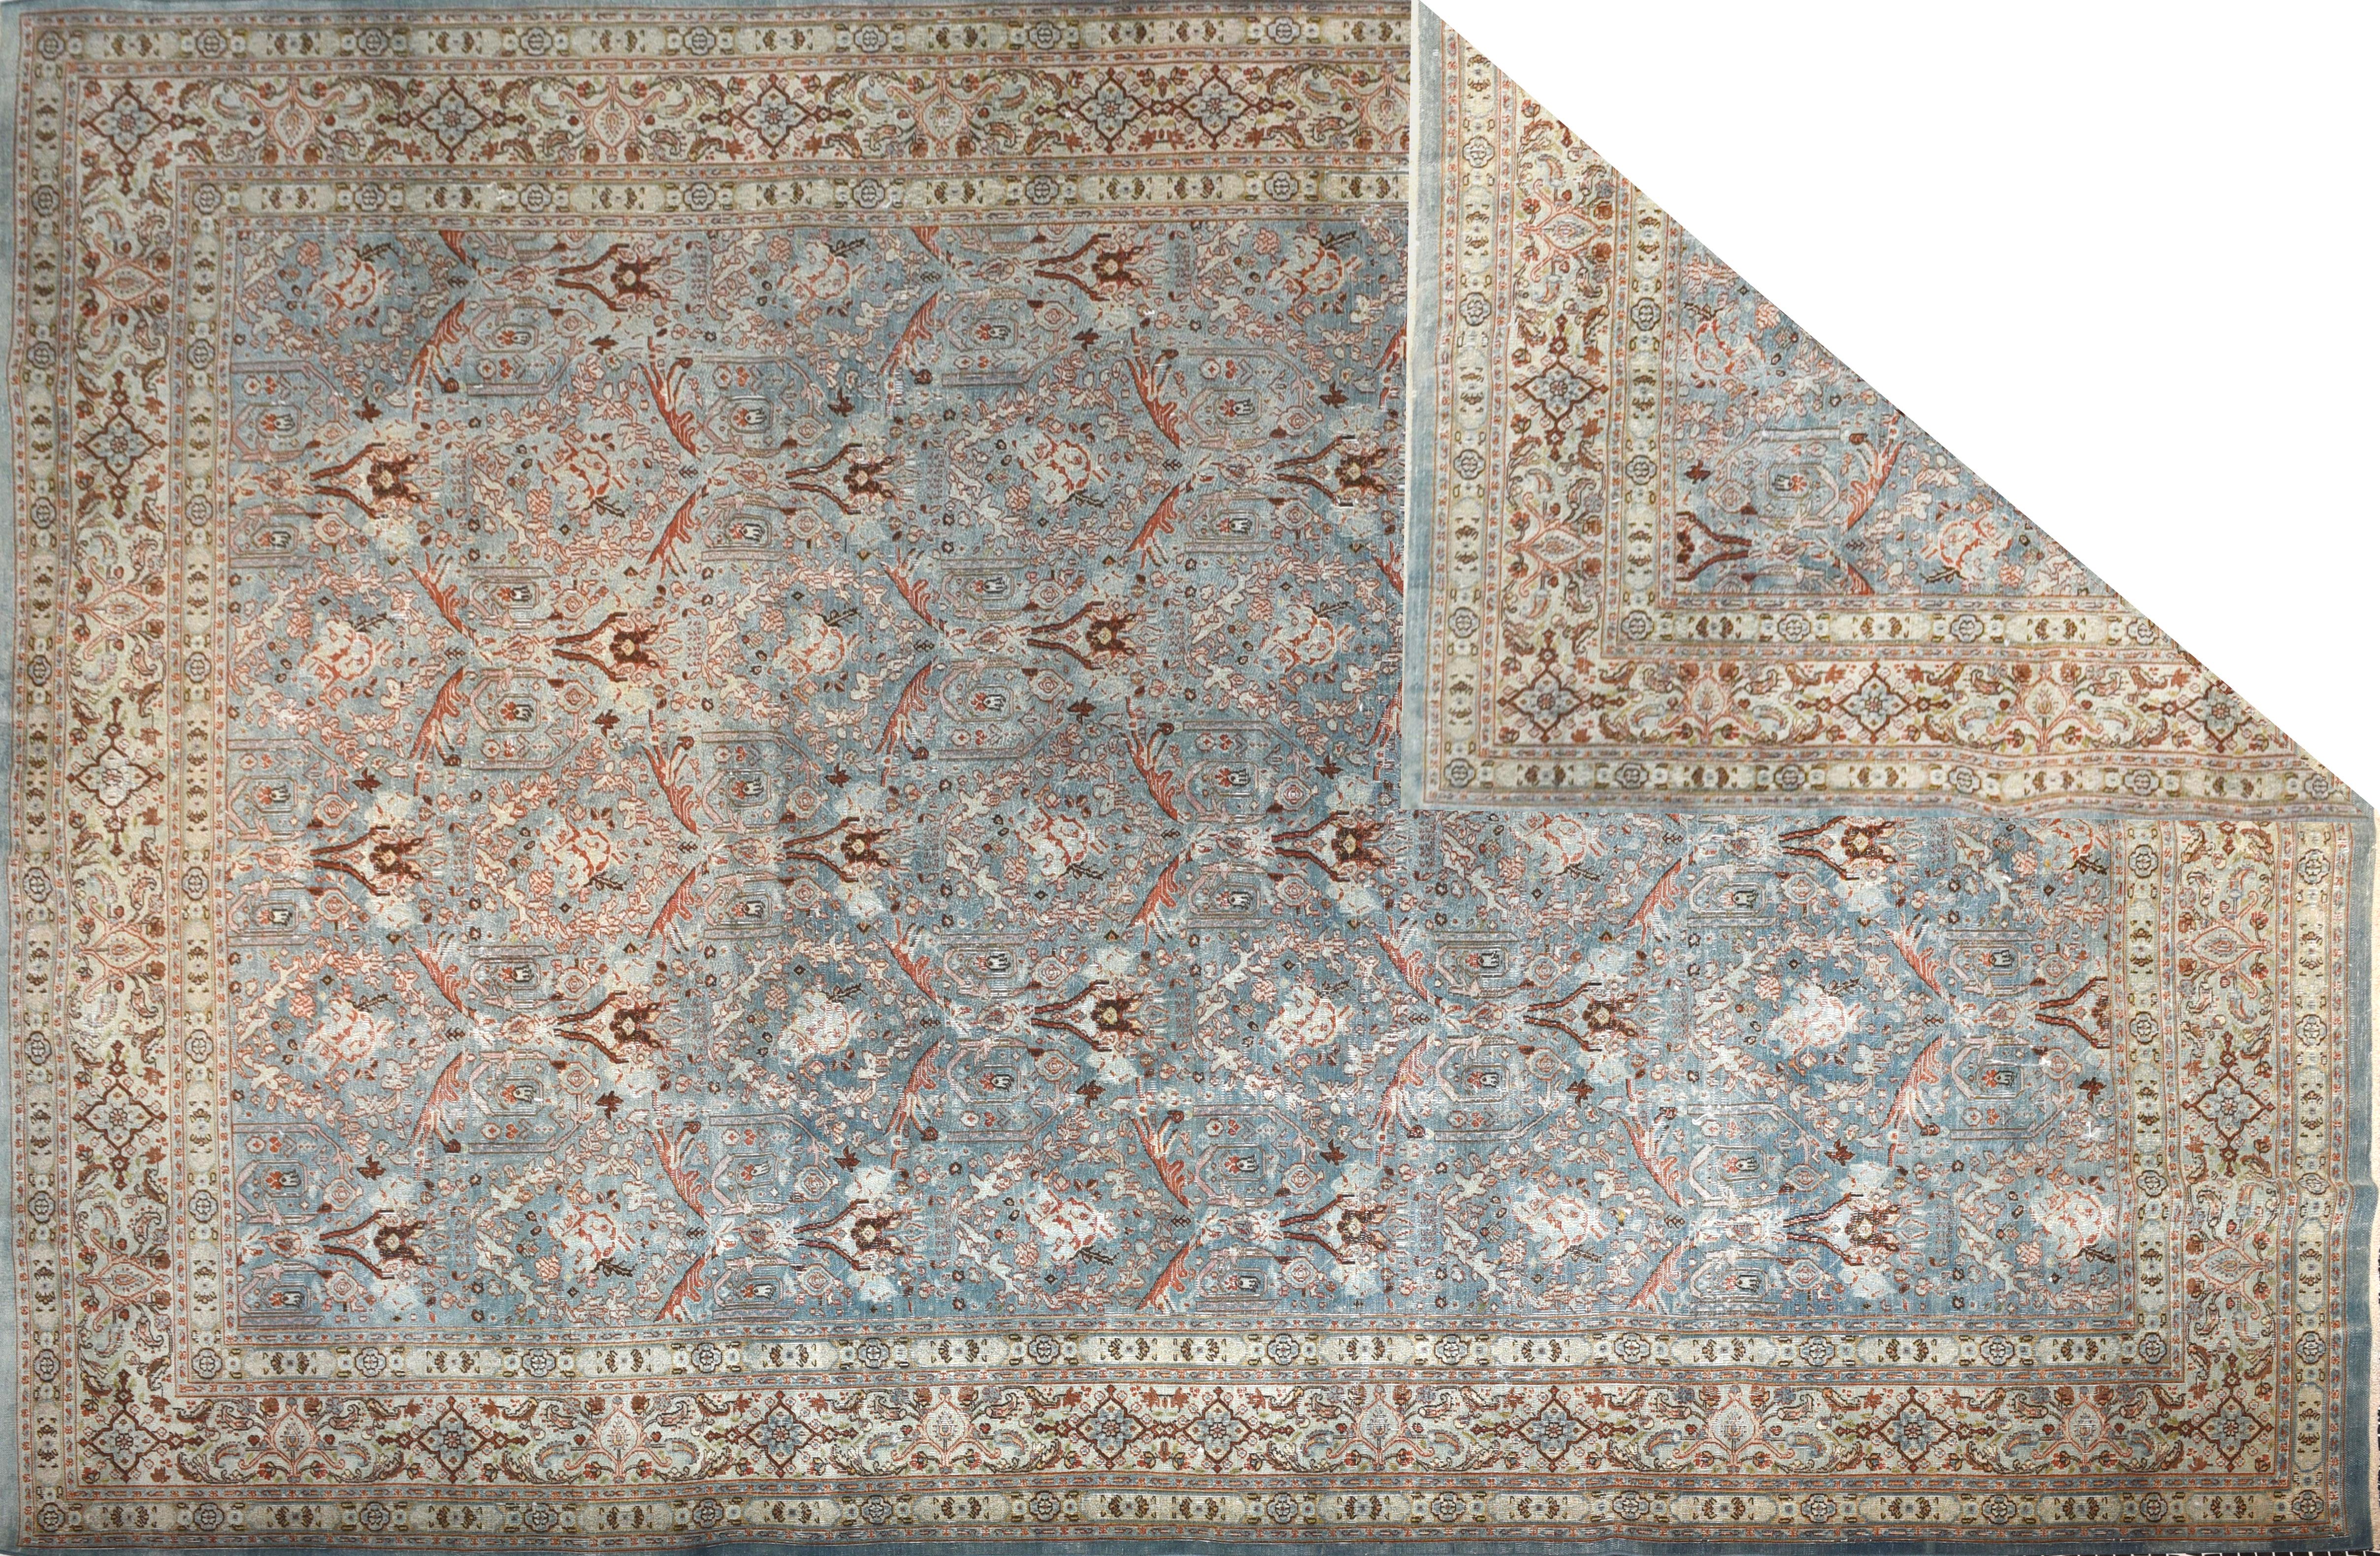 Un tapis de Tabriz fait partie de la catégorie générale des tapis persans de la ville de Tabriz, capitale de la province d'Azarbaijan oriental, située au nord-ouest de l'Iran et totalement peuplée d'Azerbaïdjanais. C'est l'un des plus anciens